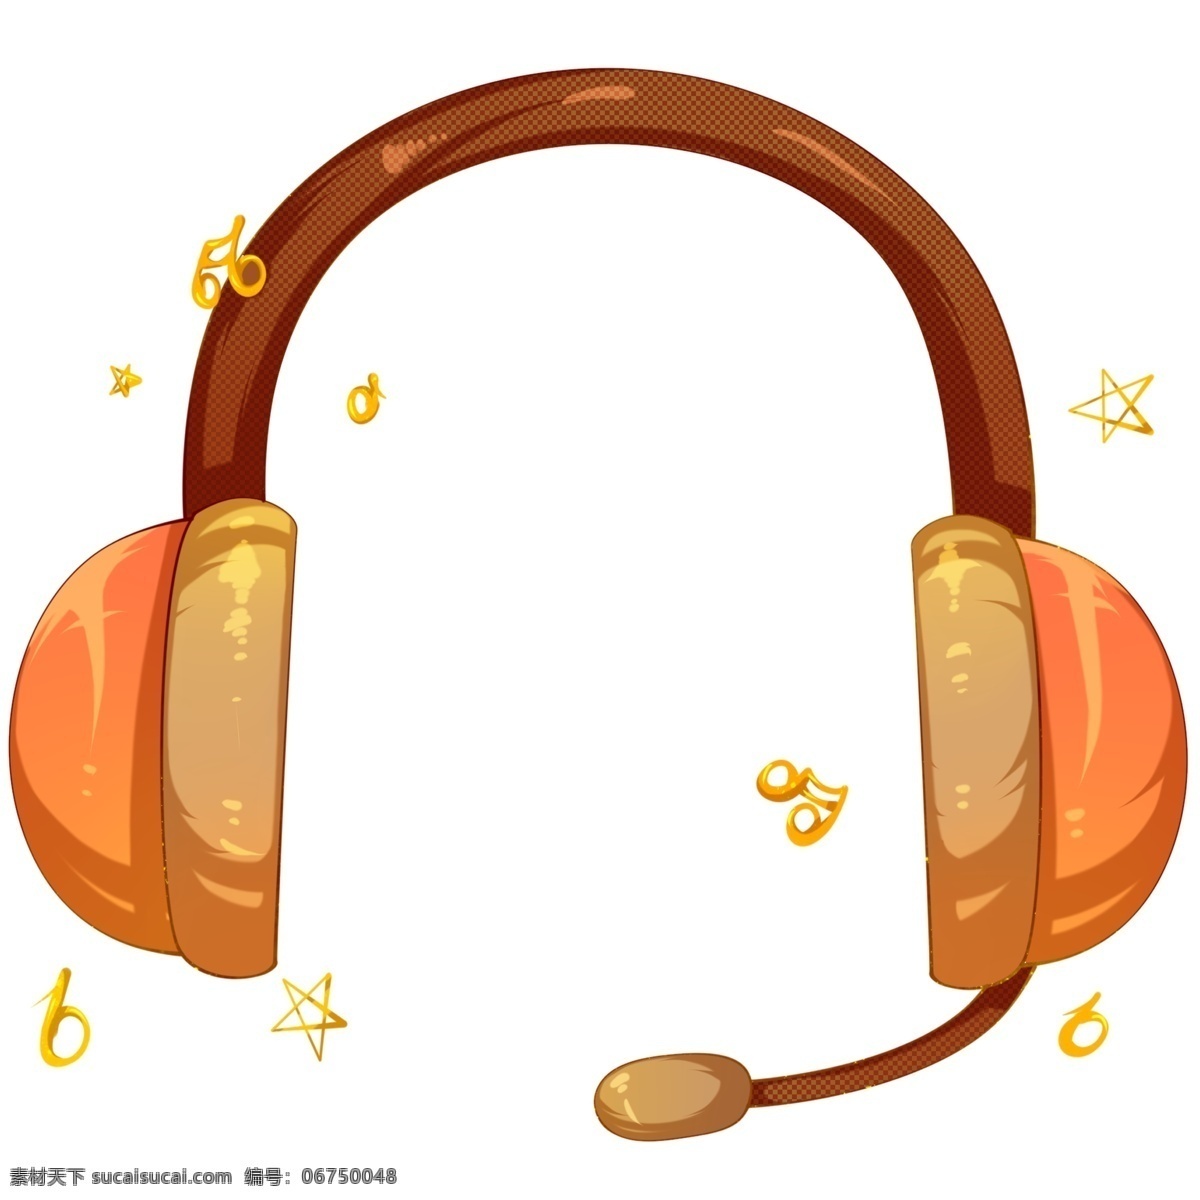 听 音乐 耳机 插画 听音乐的耳机 卡通插画 音乐插画 音乐演奏 音乐表演 音乐乐器 美妙的音乐